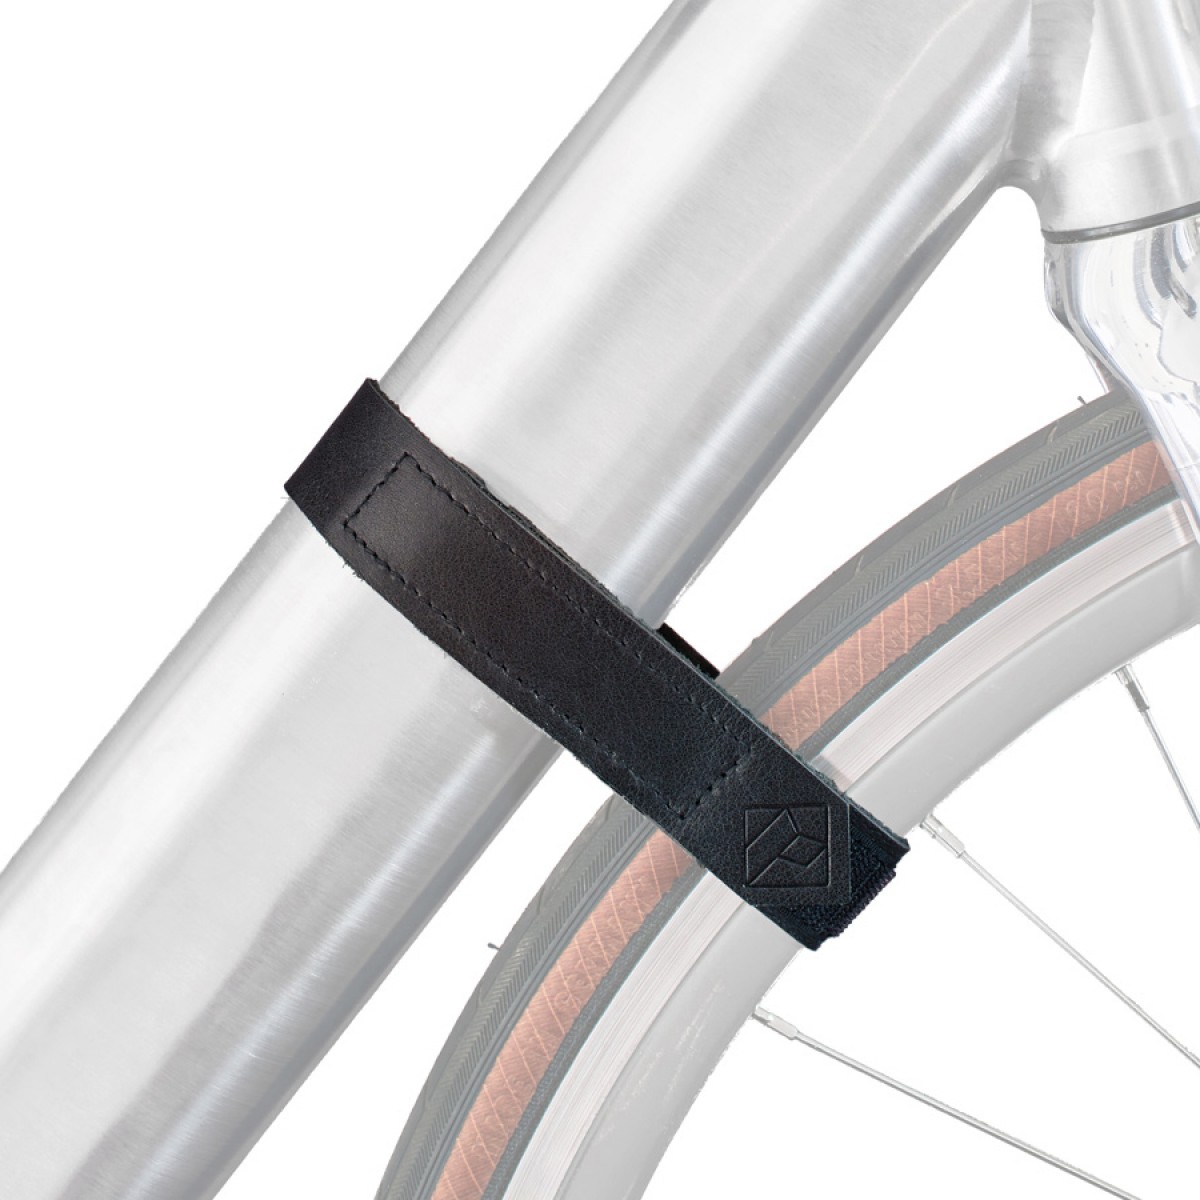 Lederband zur Vorderrad-Fixierung | PARAX® D-STRAP | Für alle Fahrrad Wandhalterungen 